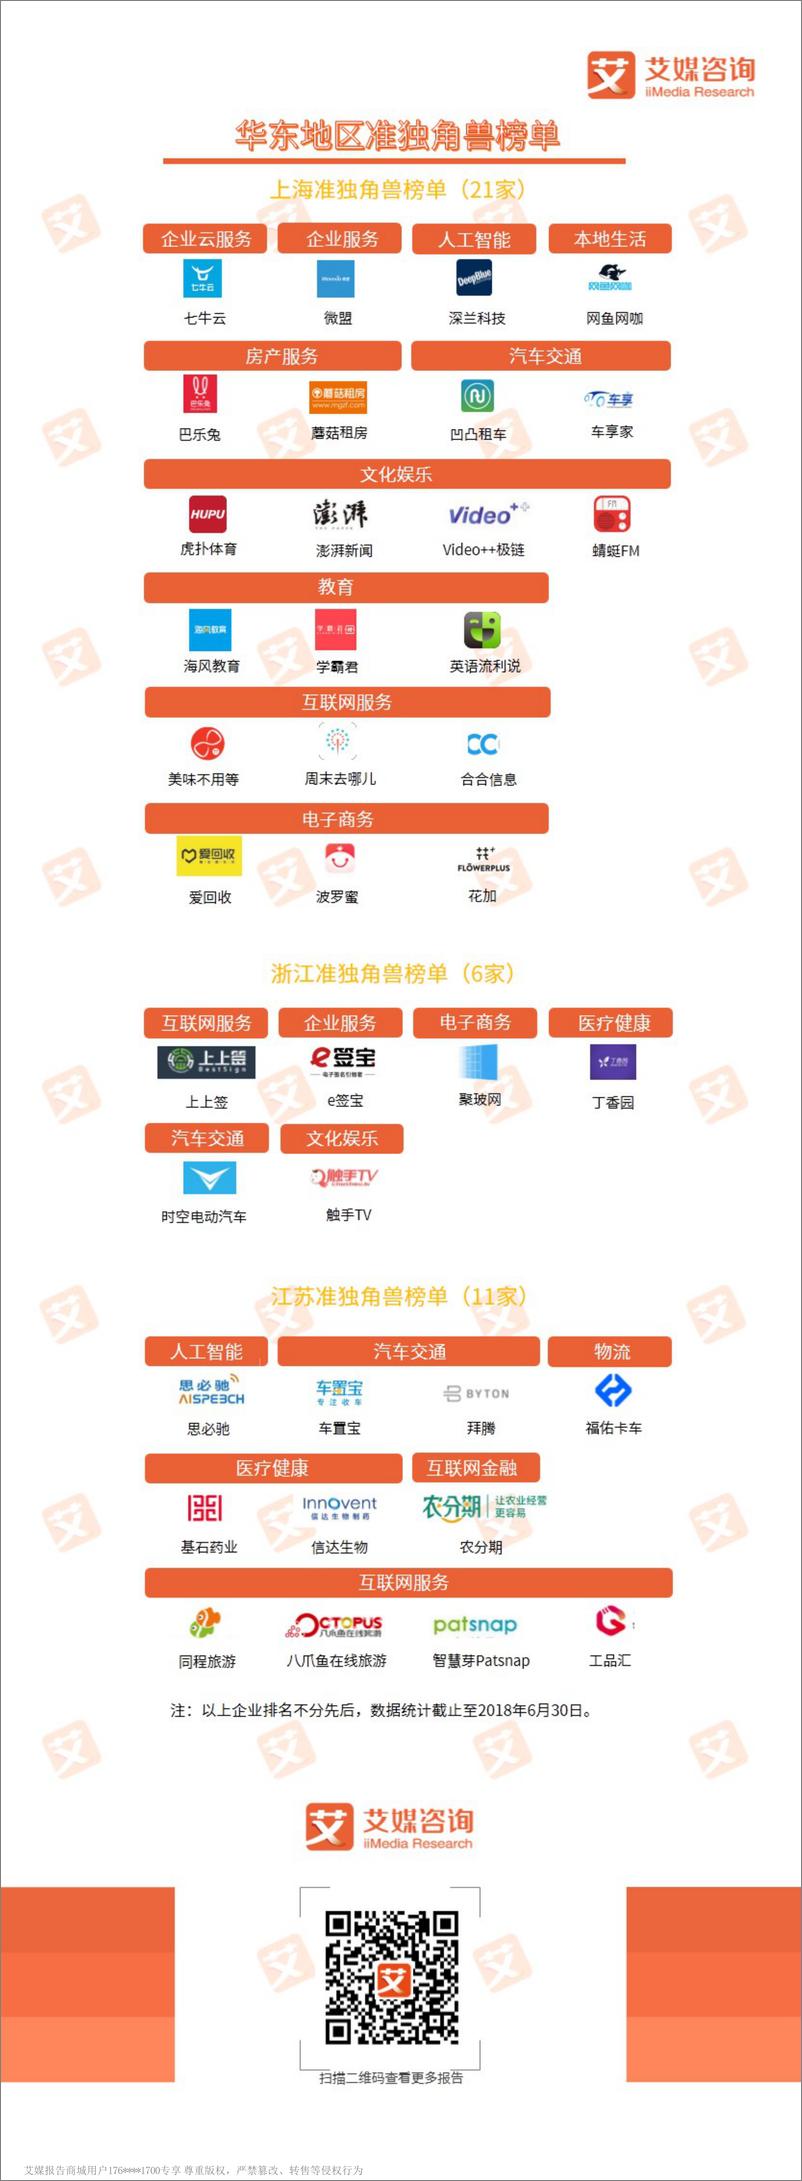 《艾媒榜单+%7C+2018中国华东新经济行业准独角兽榜单》 - 第1页预览图